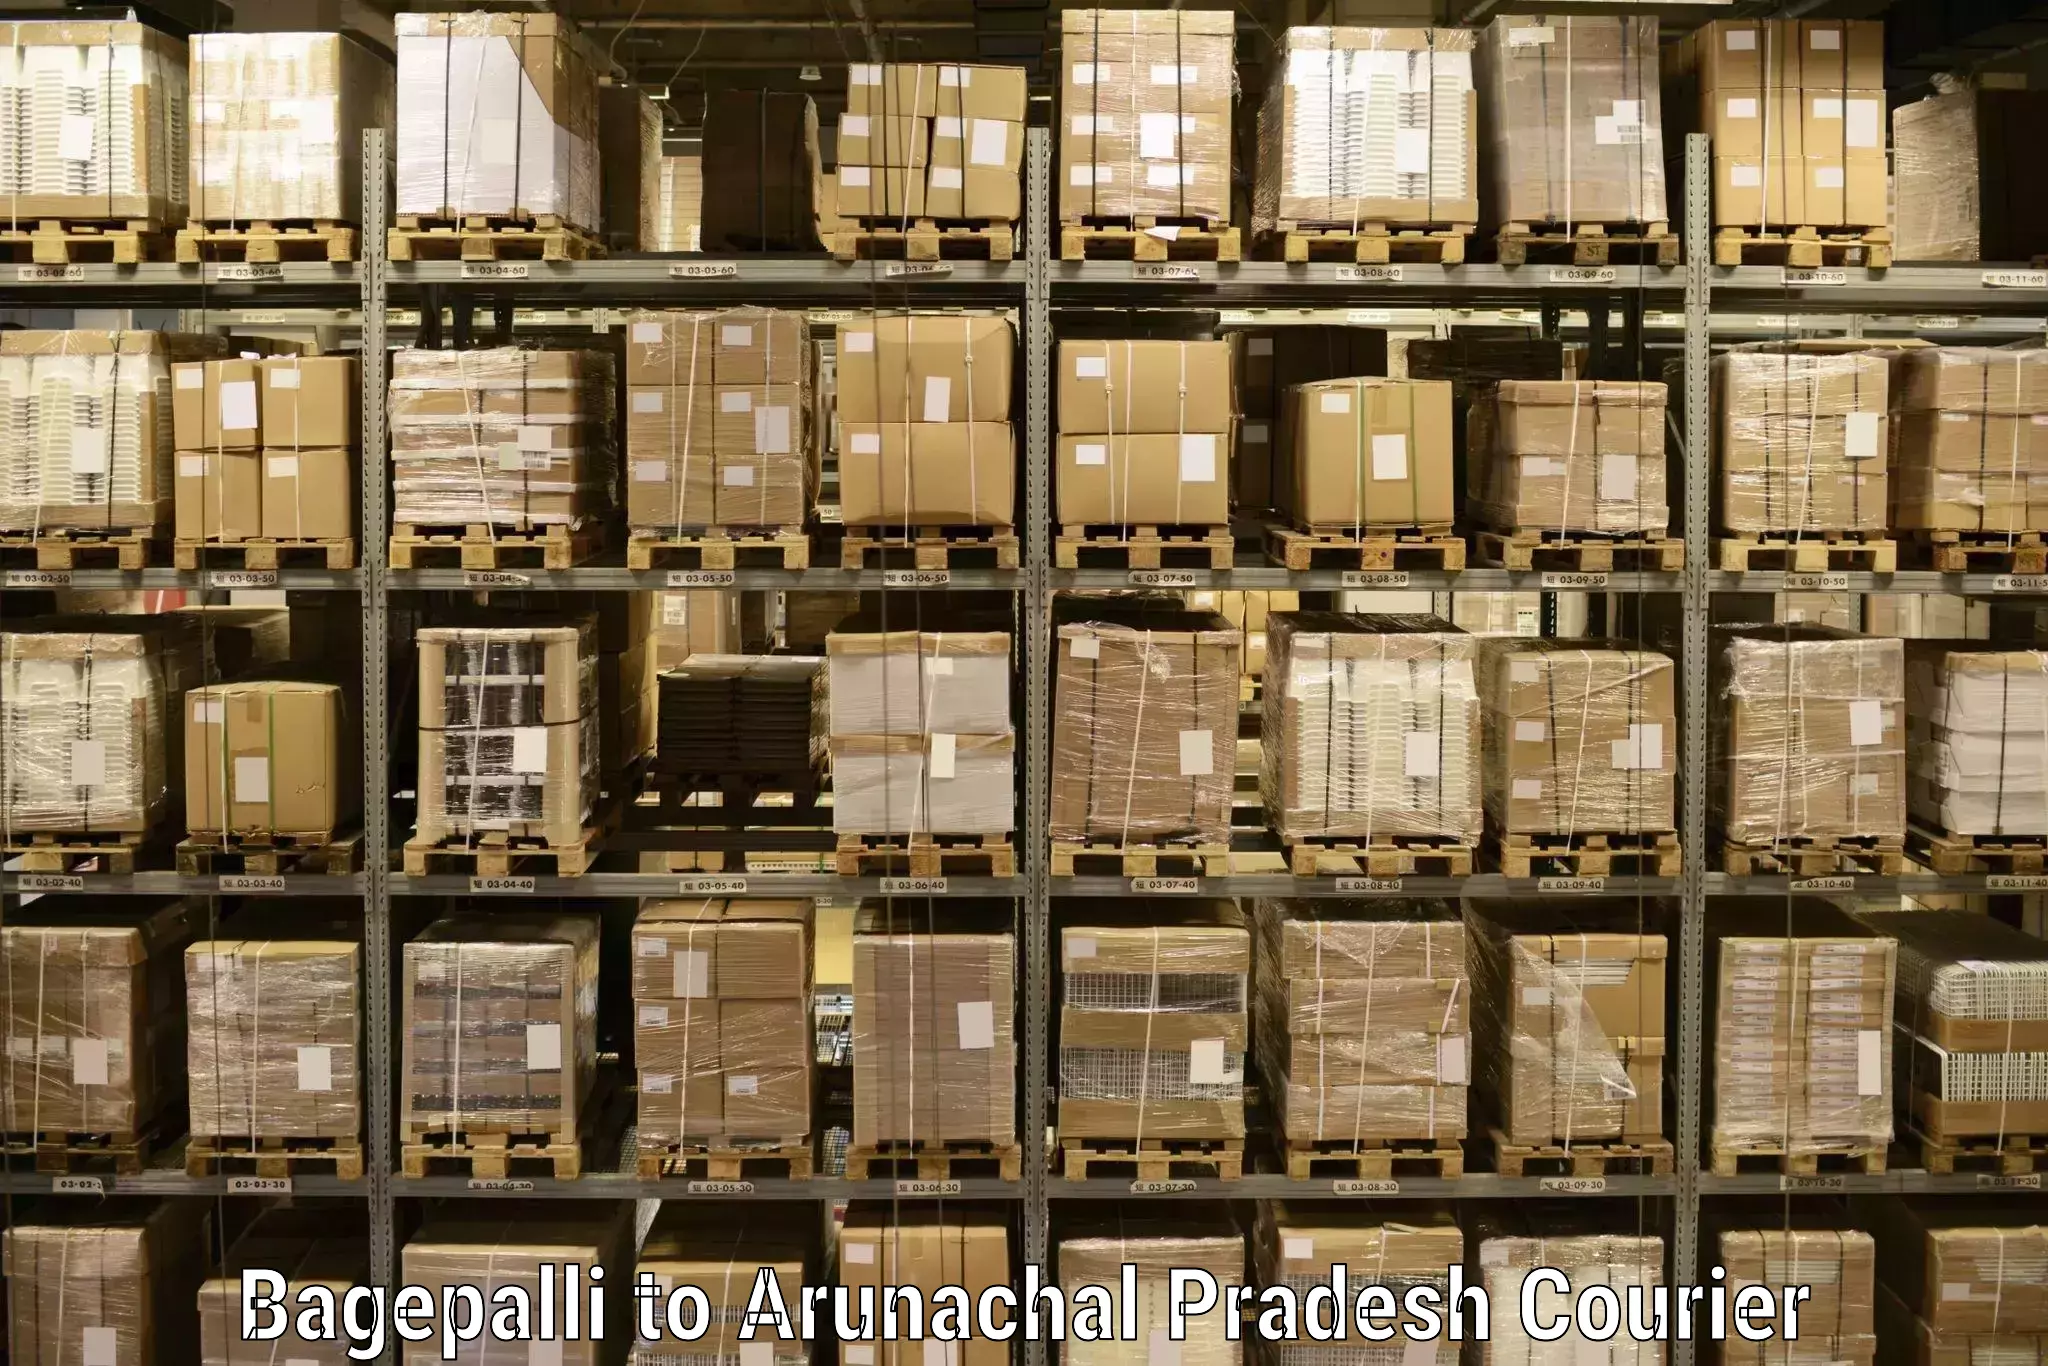 Courier service comparison Bagepalli to Arunachal Pradesh